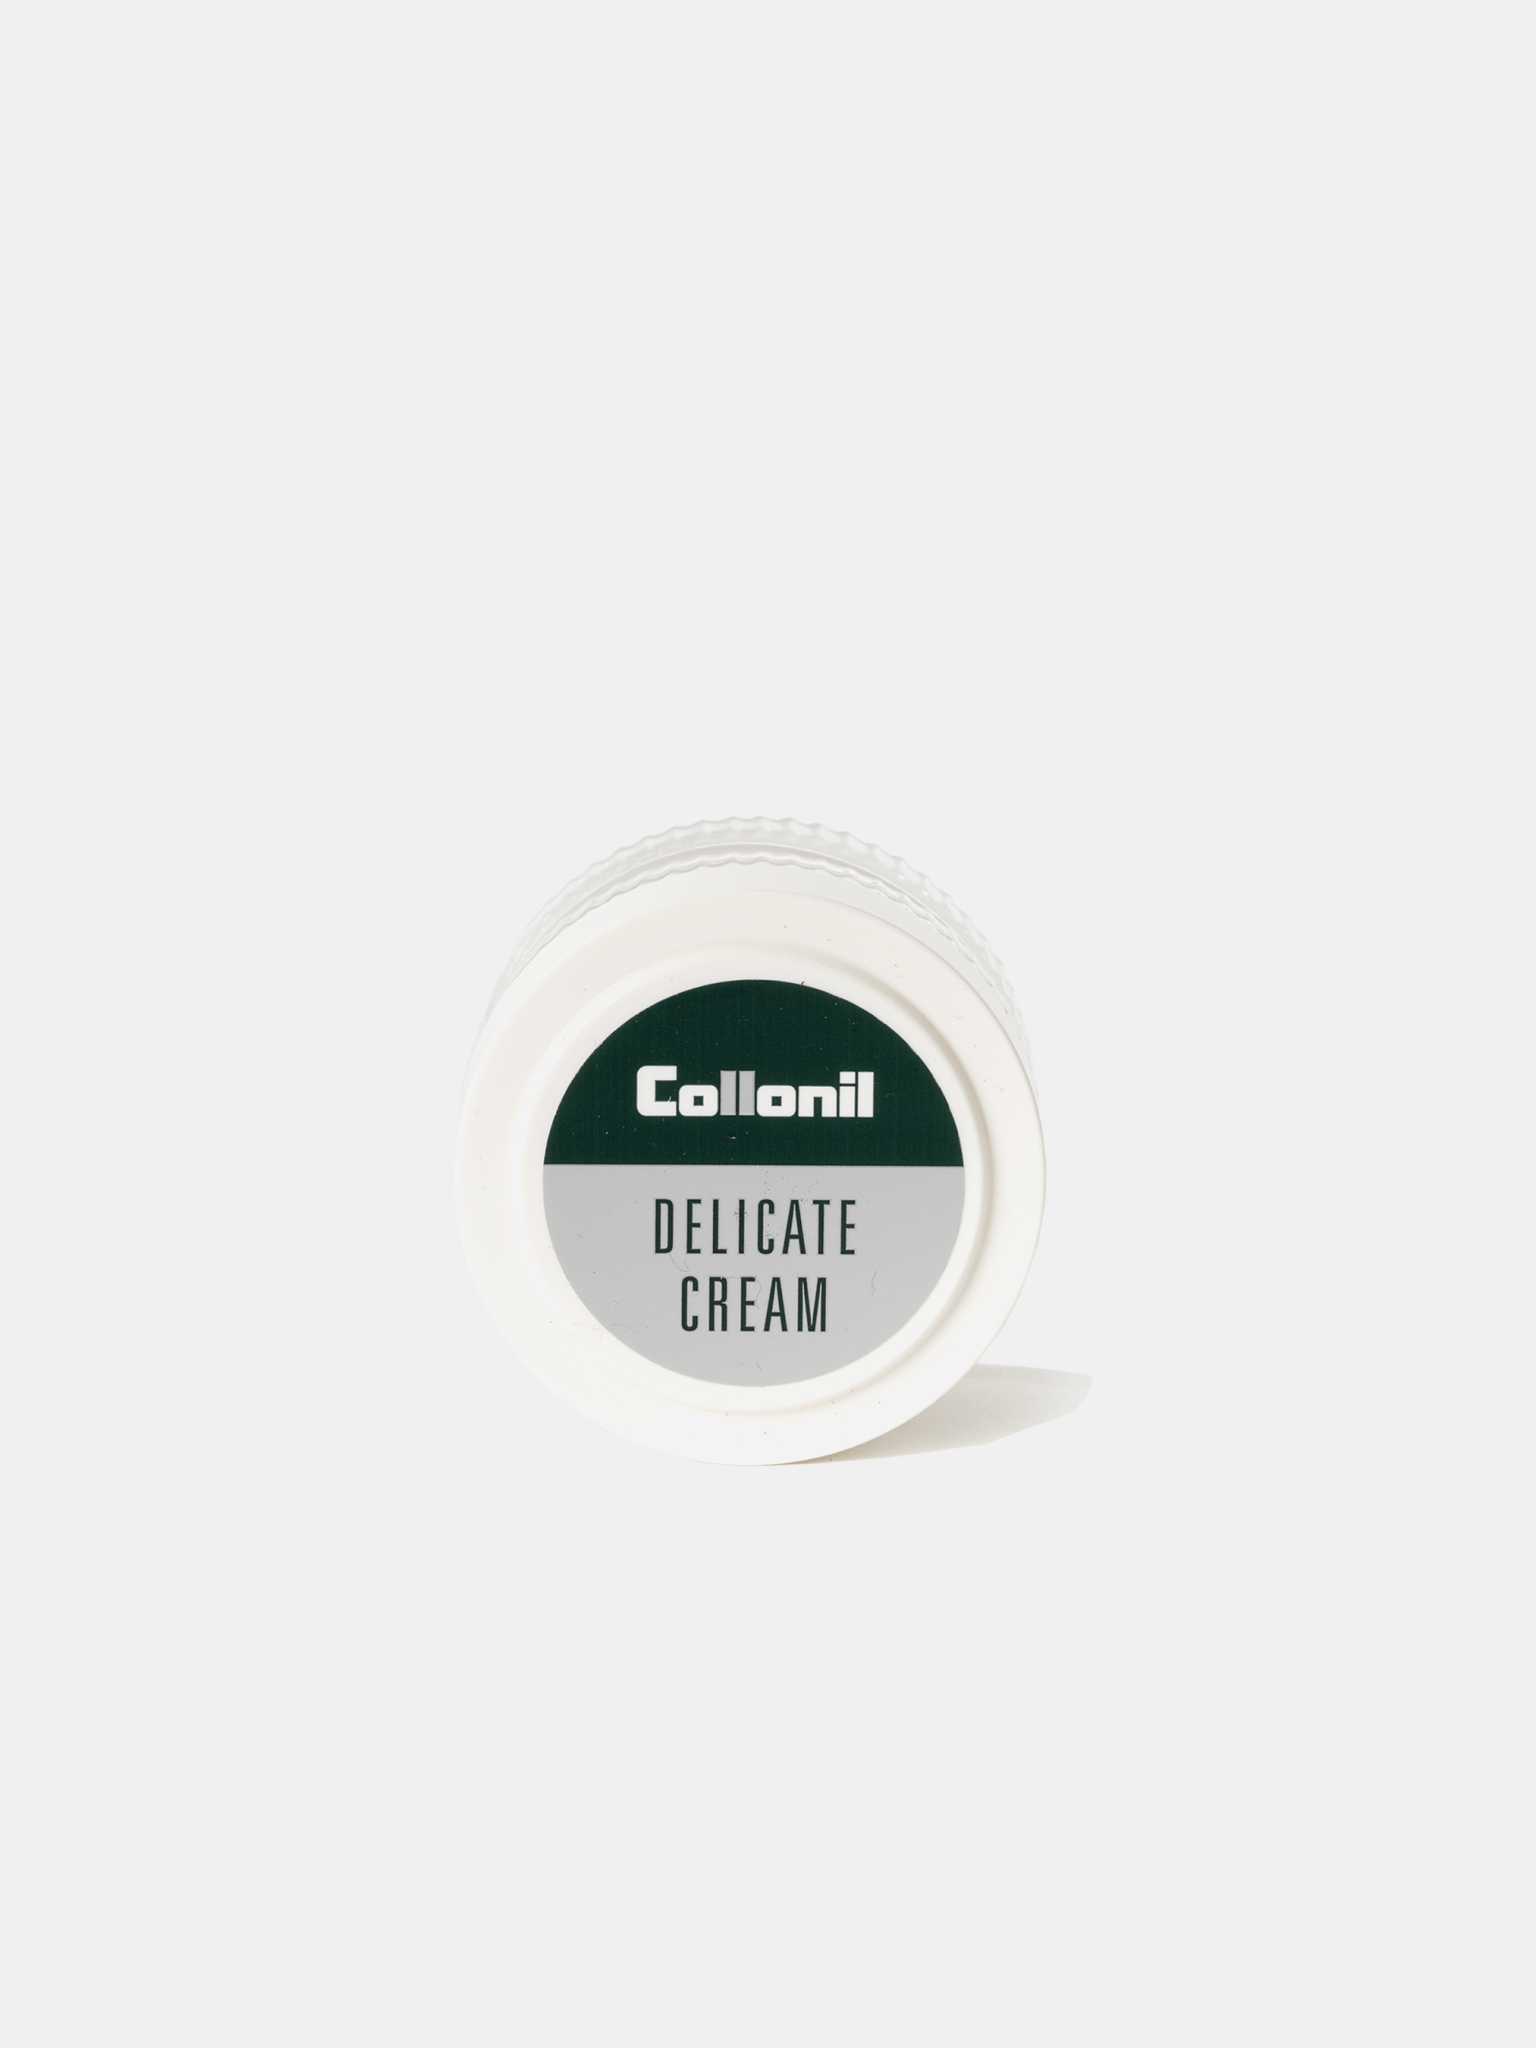 The Collonil Delicate Cream - 50ml - The Cambridge Satchel Company US Store